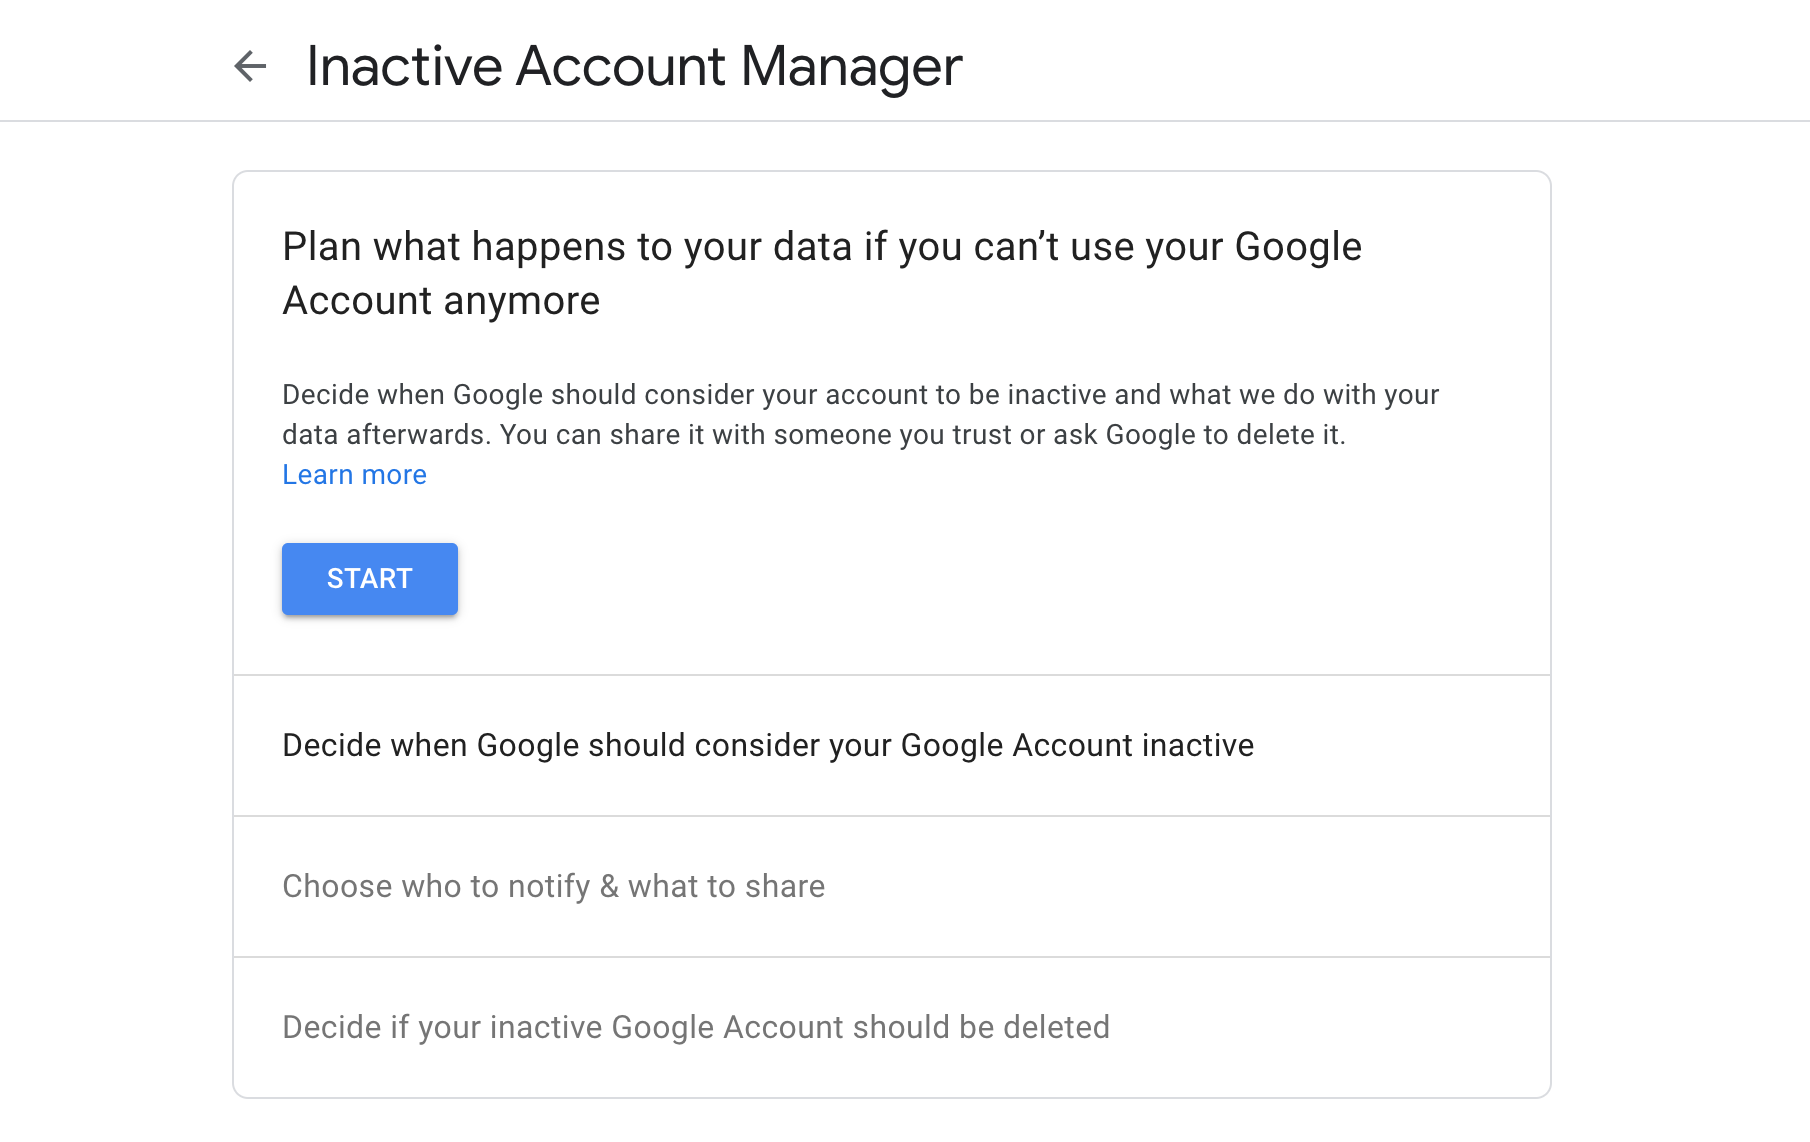 Pantalla de inicio del administrador de cuentas inactivas de Google